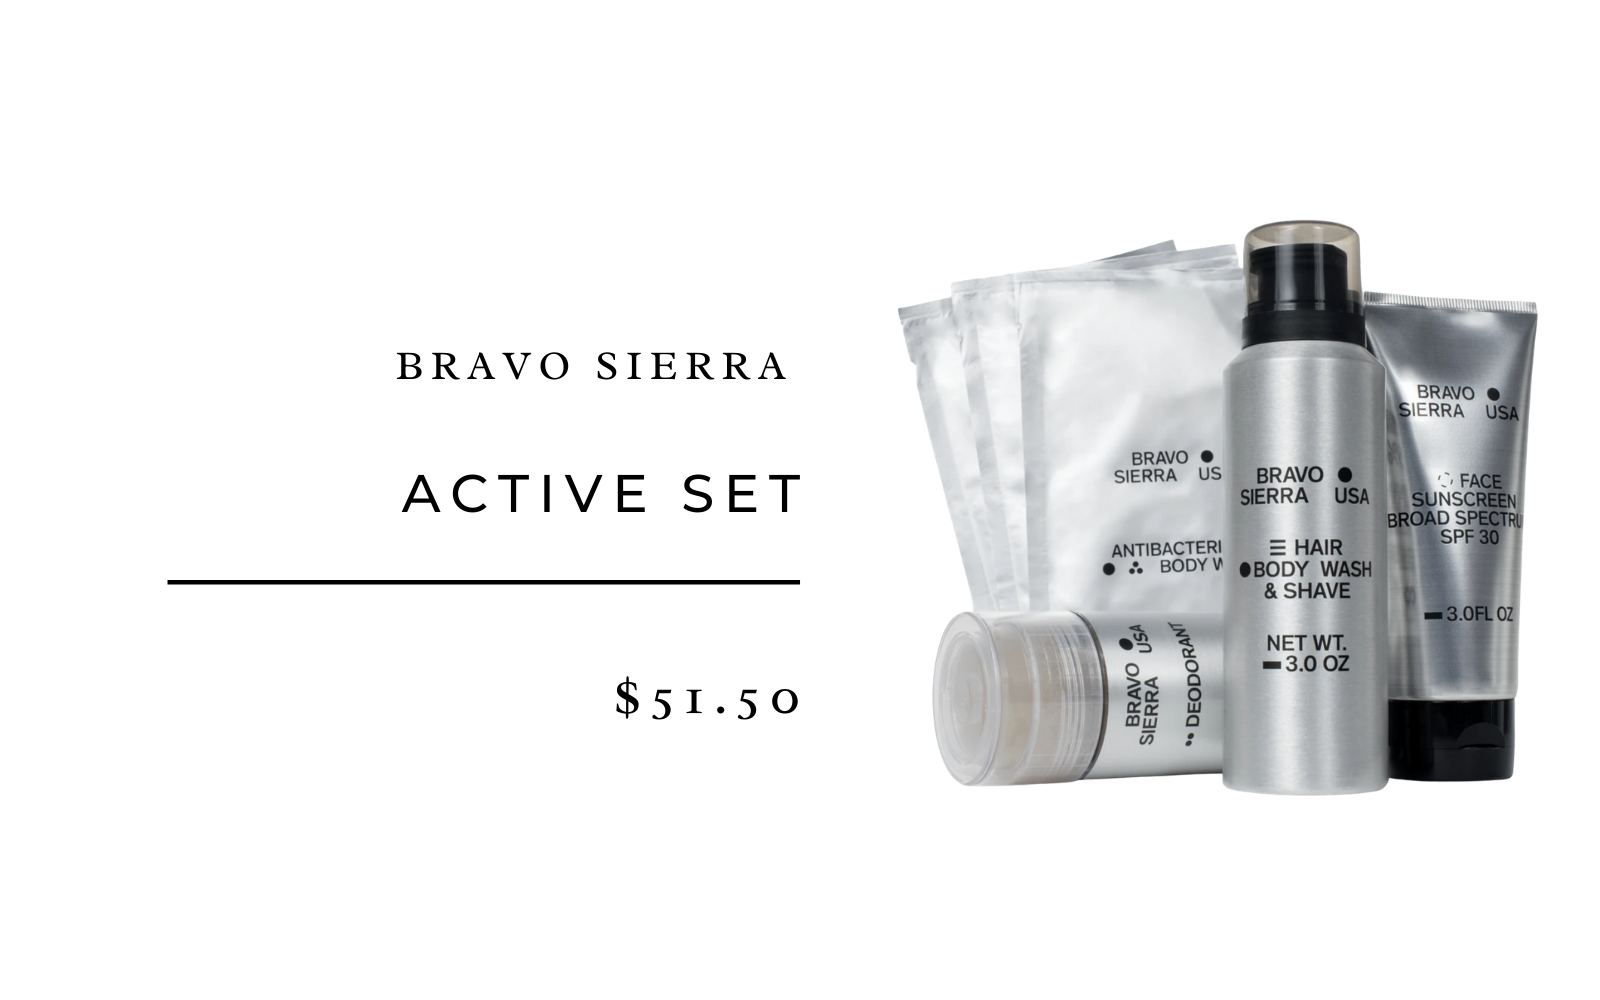 Bravo Sierra Active Set